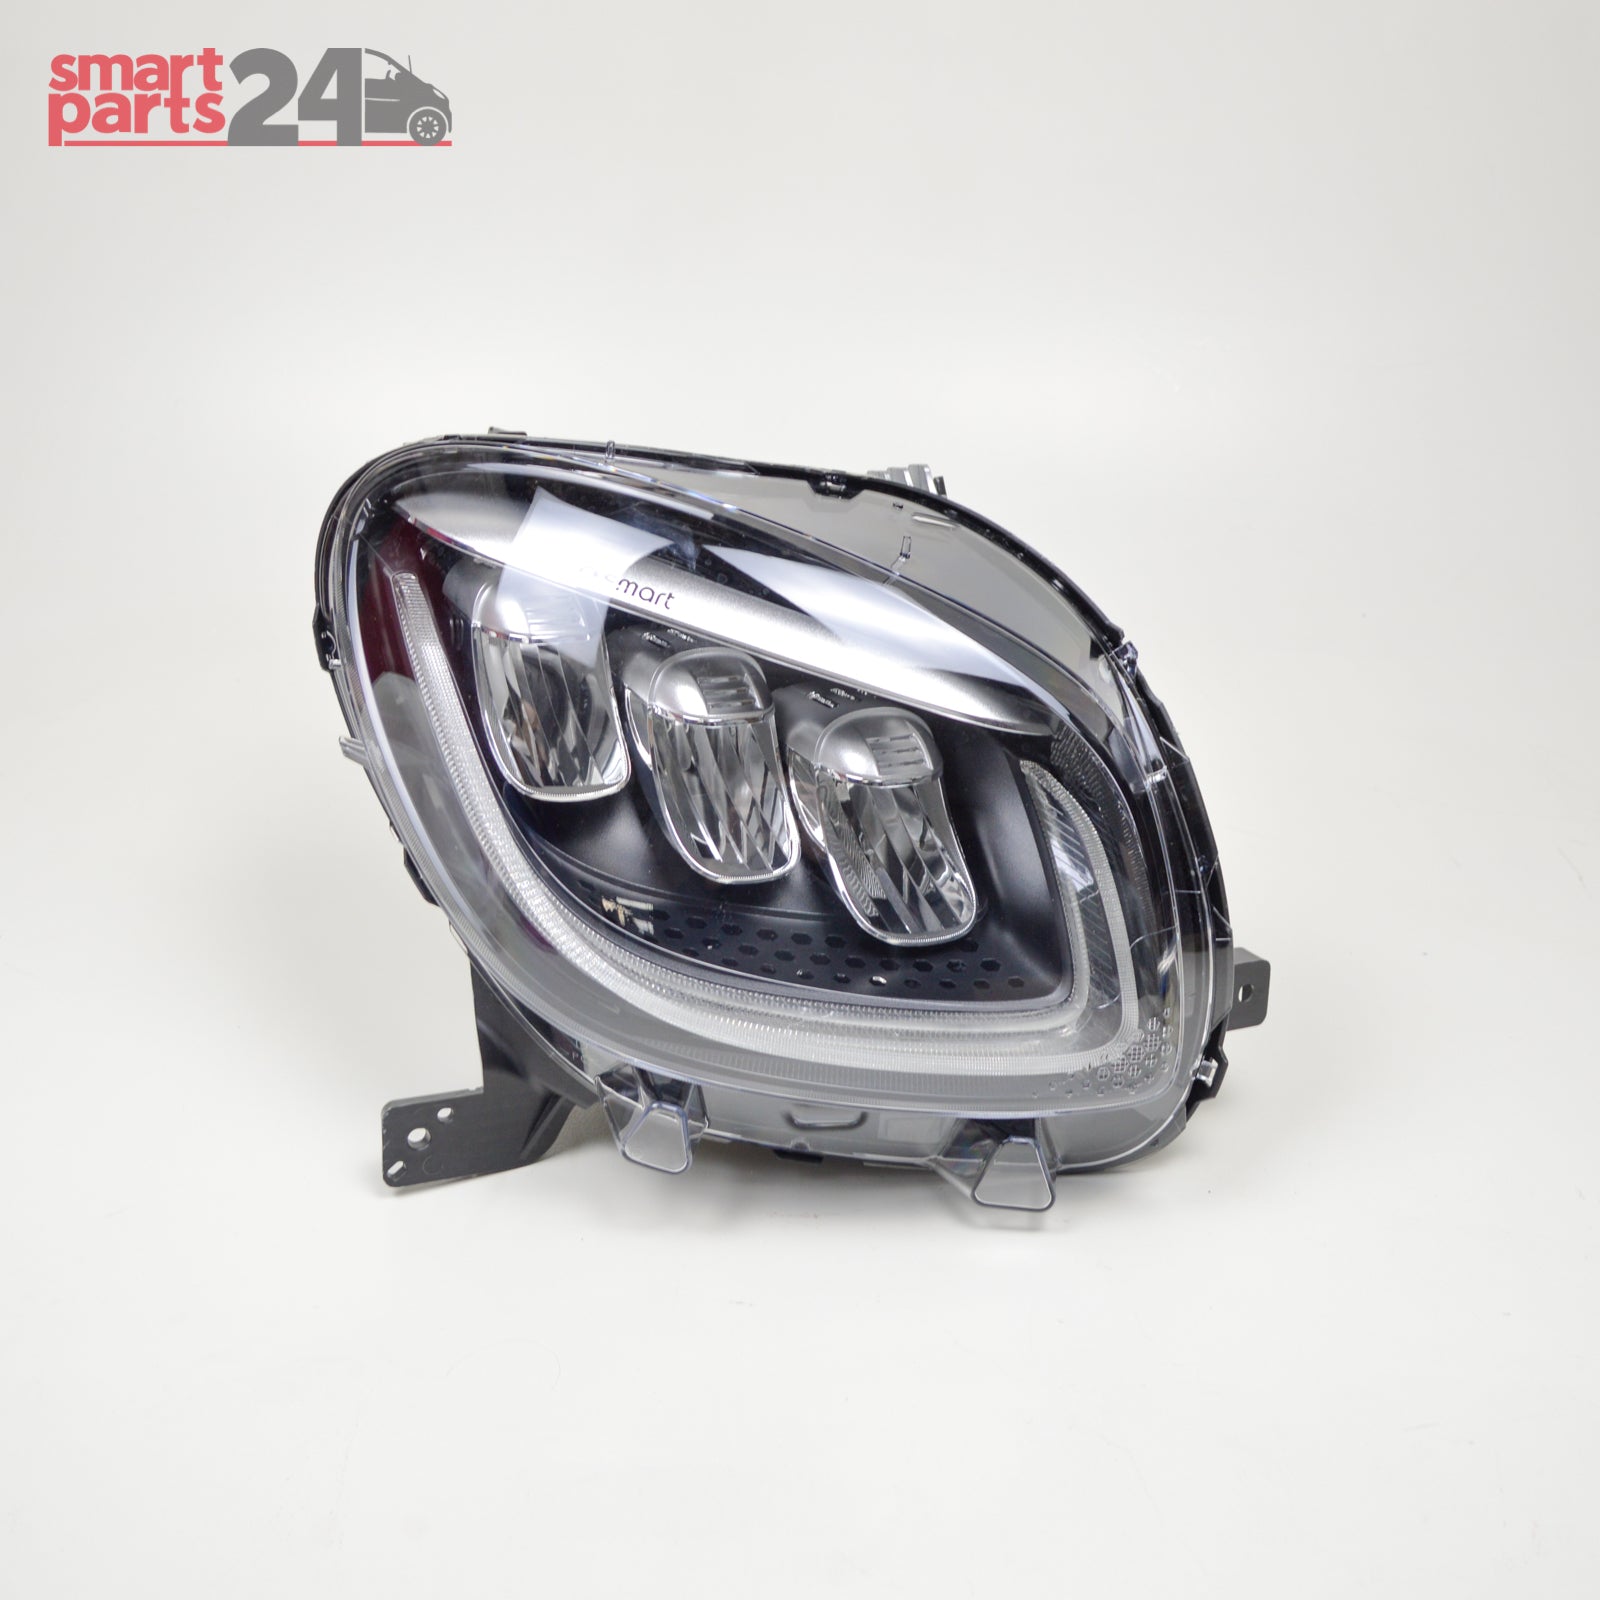 Smart Fortwo 453 facelift headlight main headlight right headlight full LED